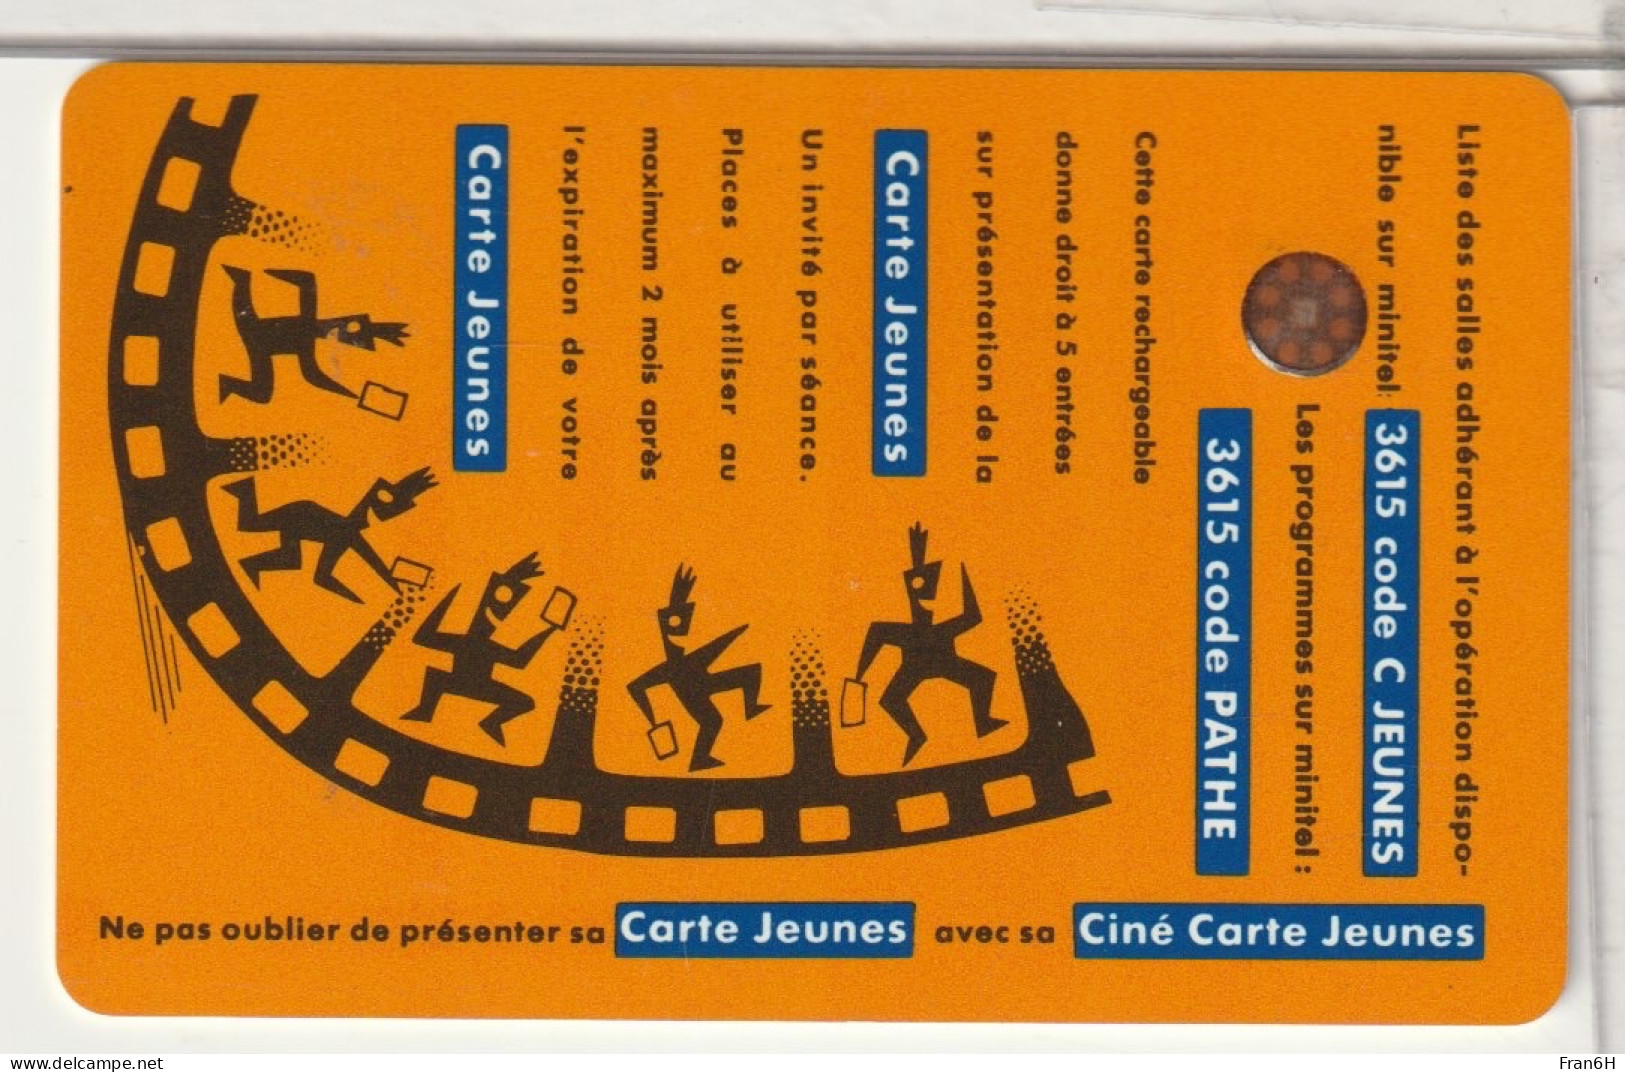 CINÉCARTE  - CINÉ CARTE JEUNES - Biglietti Cinema